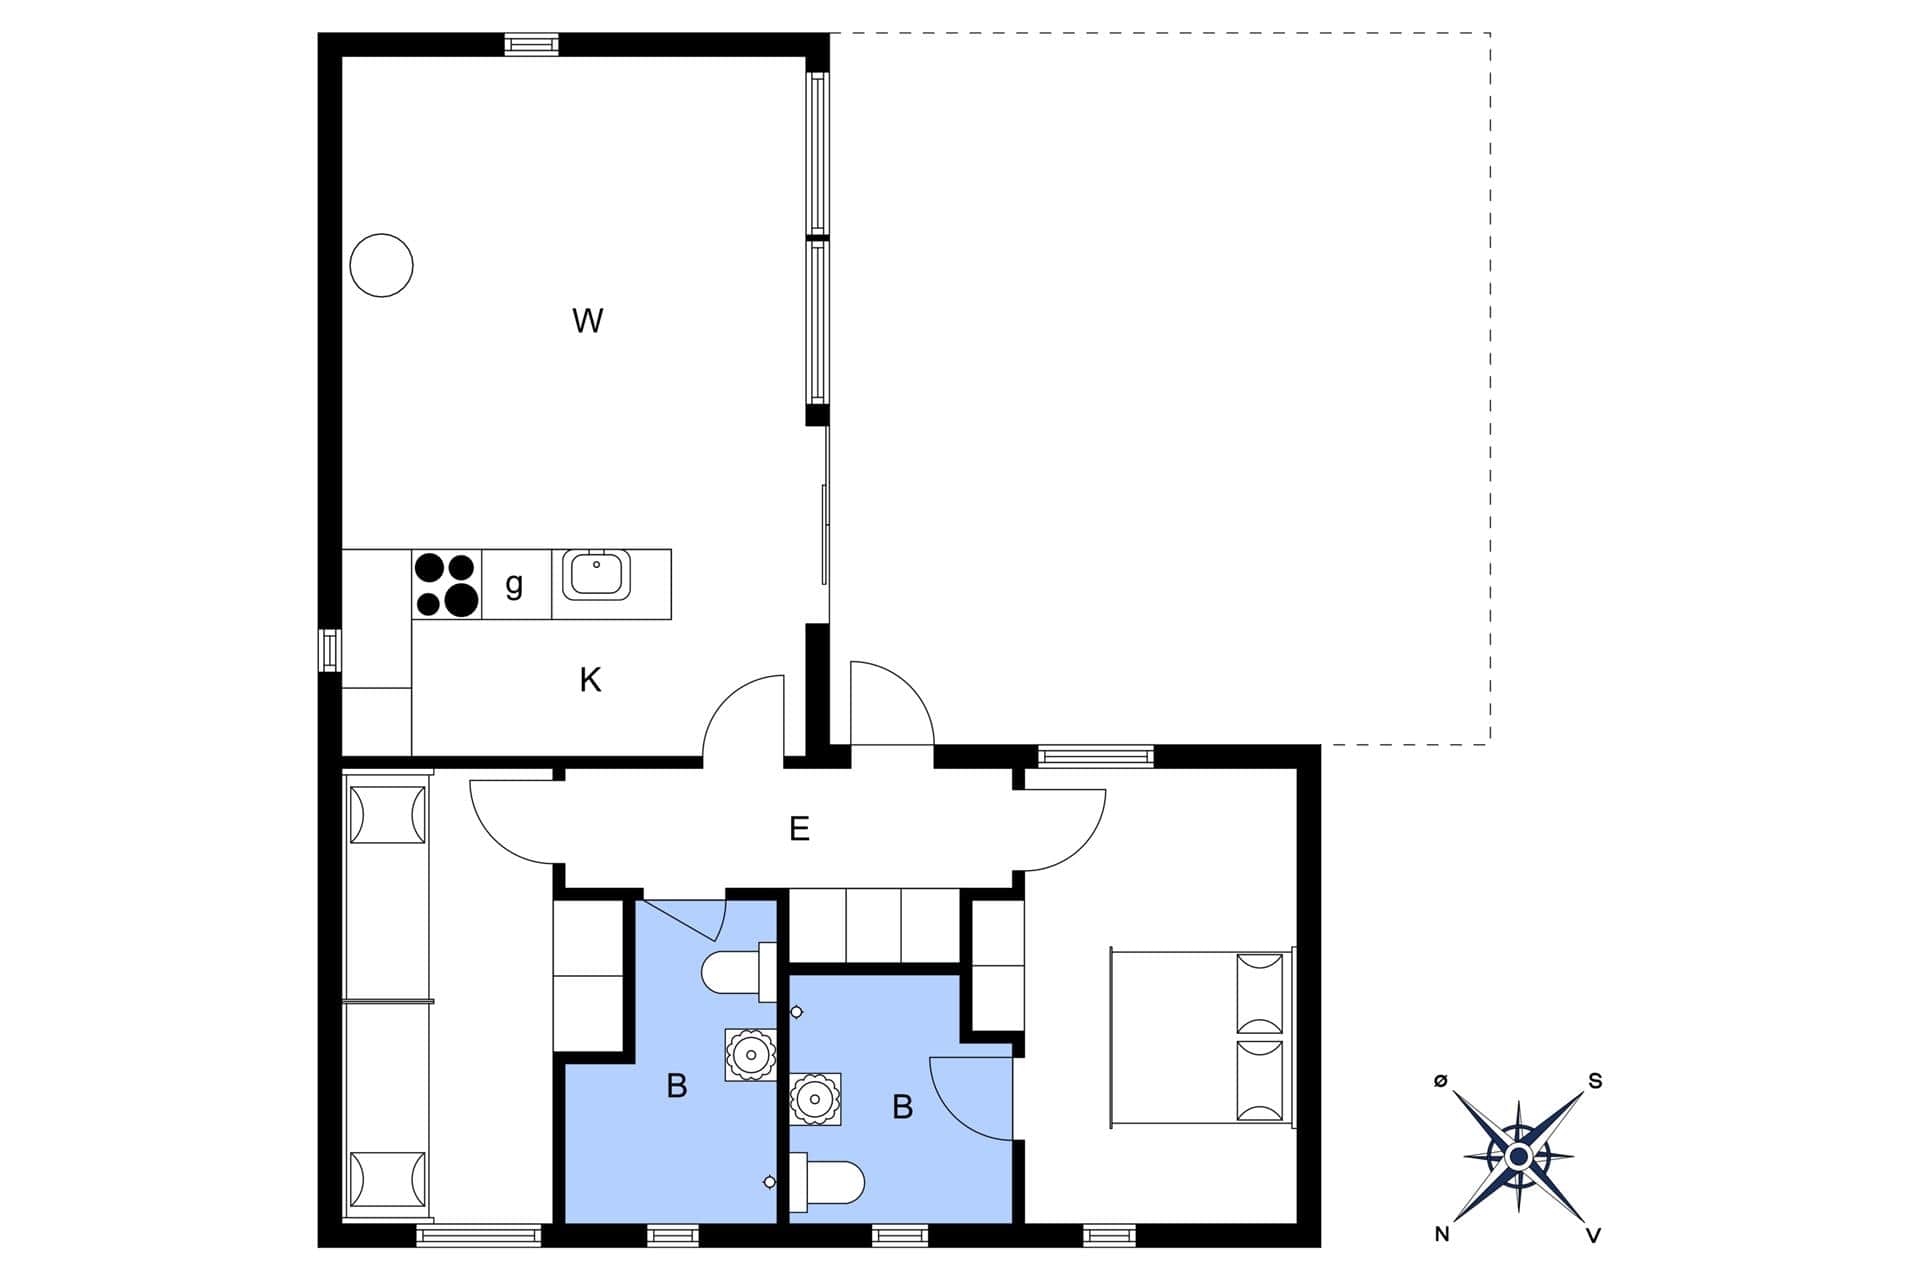 Interior 15-3 Holiday-home M642757, Oddevejen 8, DK - 5500 Middelfart